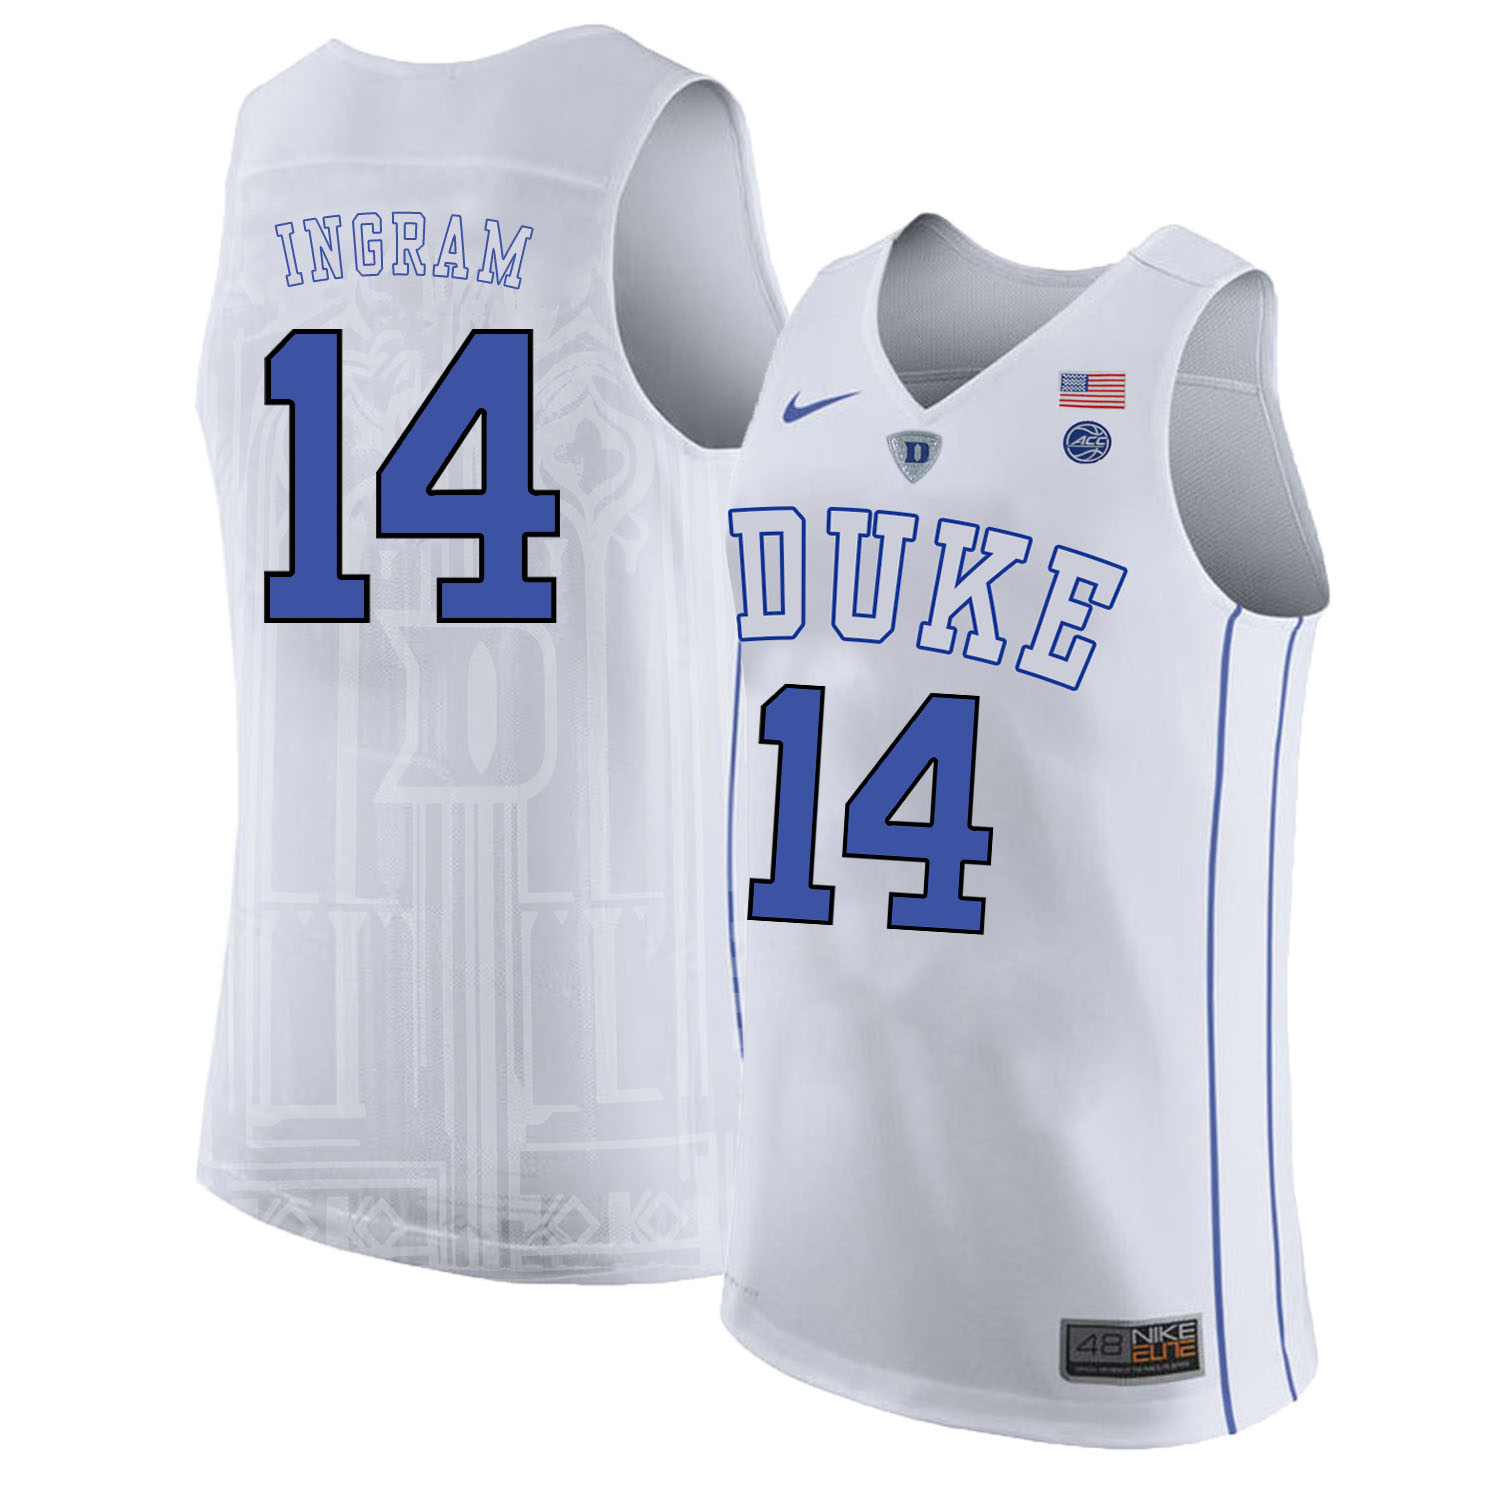 Duke Blue Devils 14 Brandon Ingram White Nike College Basketball Jersey